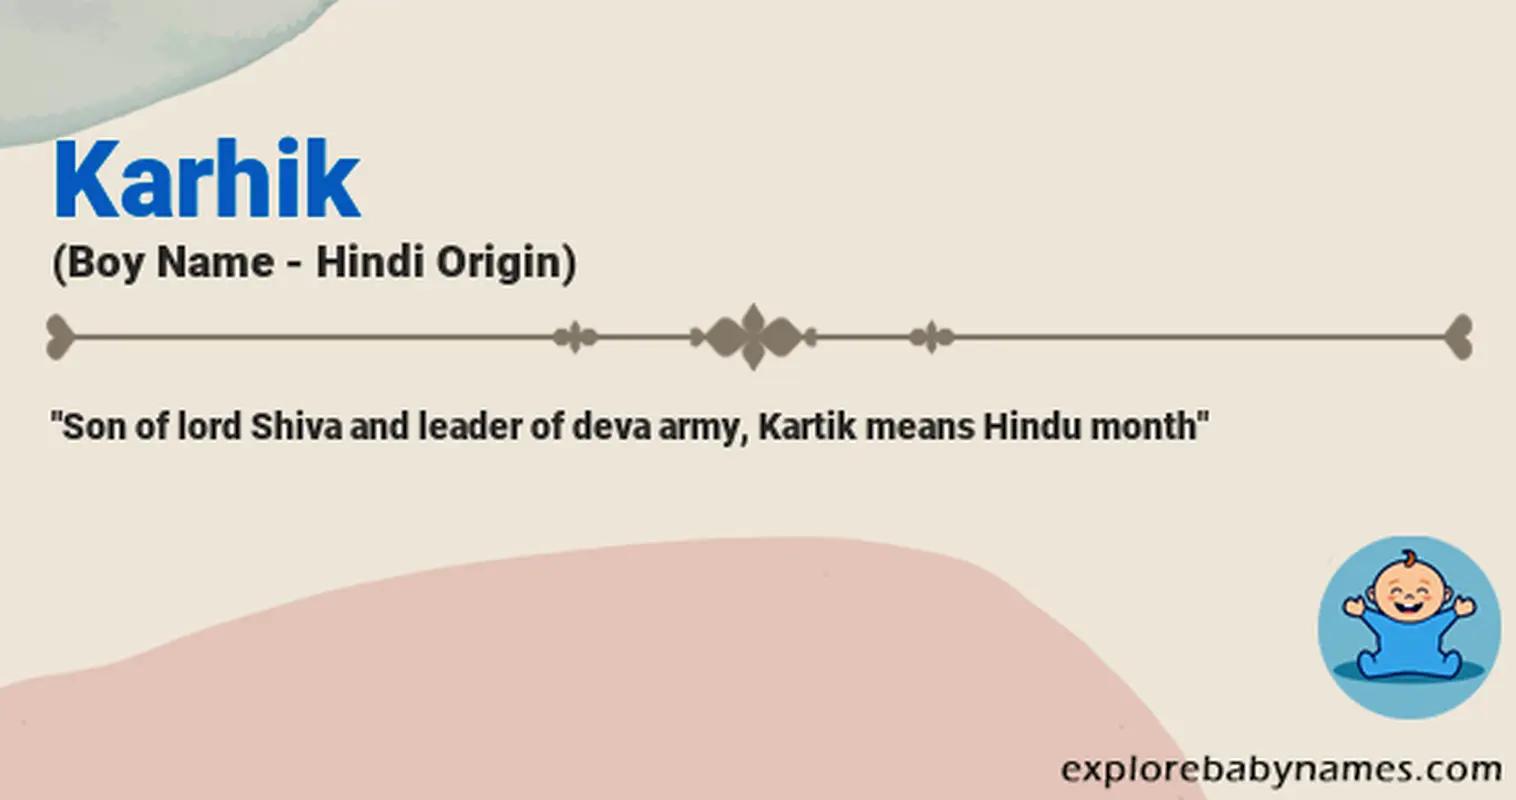 Meaning of Karhik